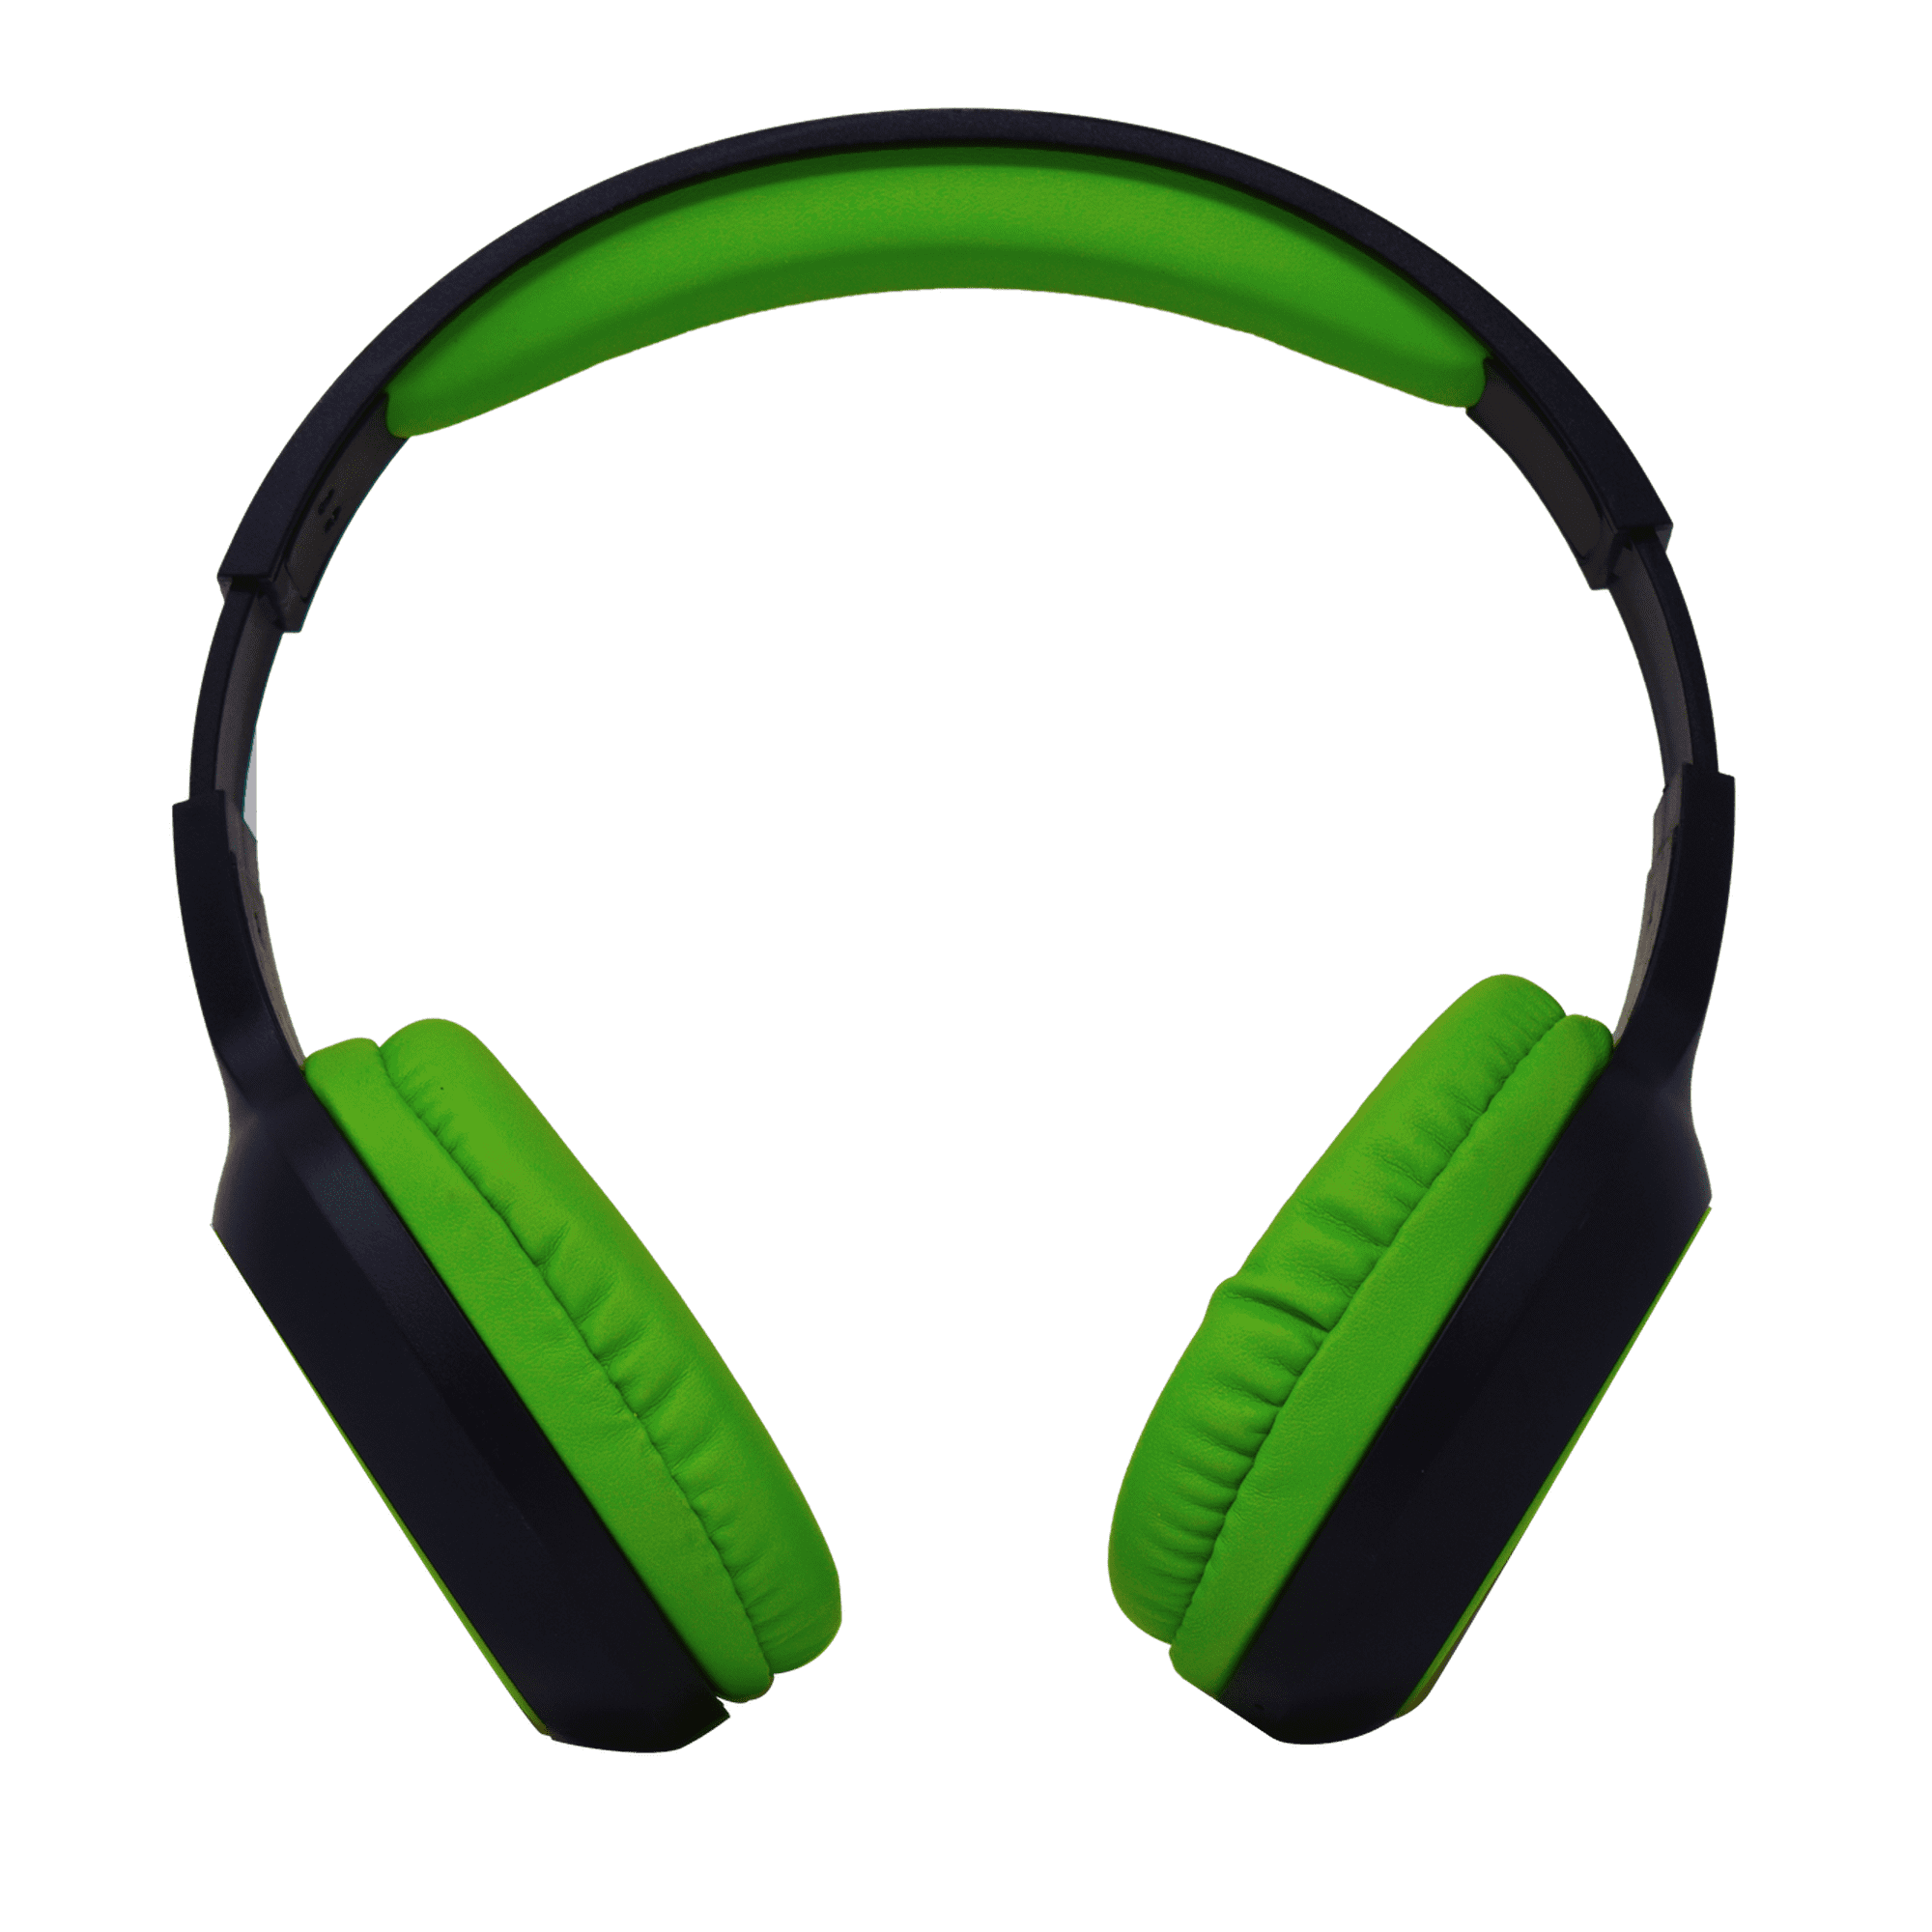 Audífonos de diadema necnon nbh-04 pro bluetooth verdes